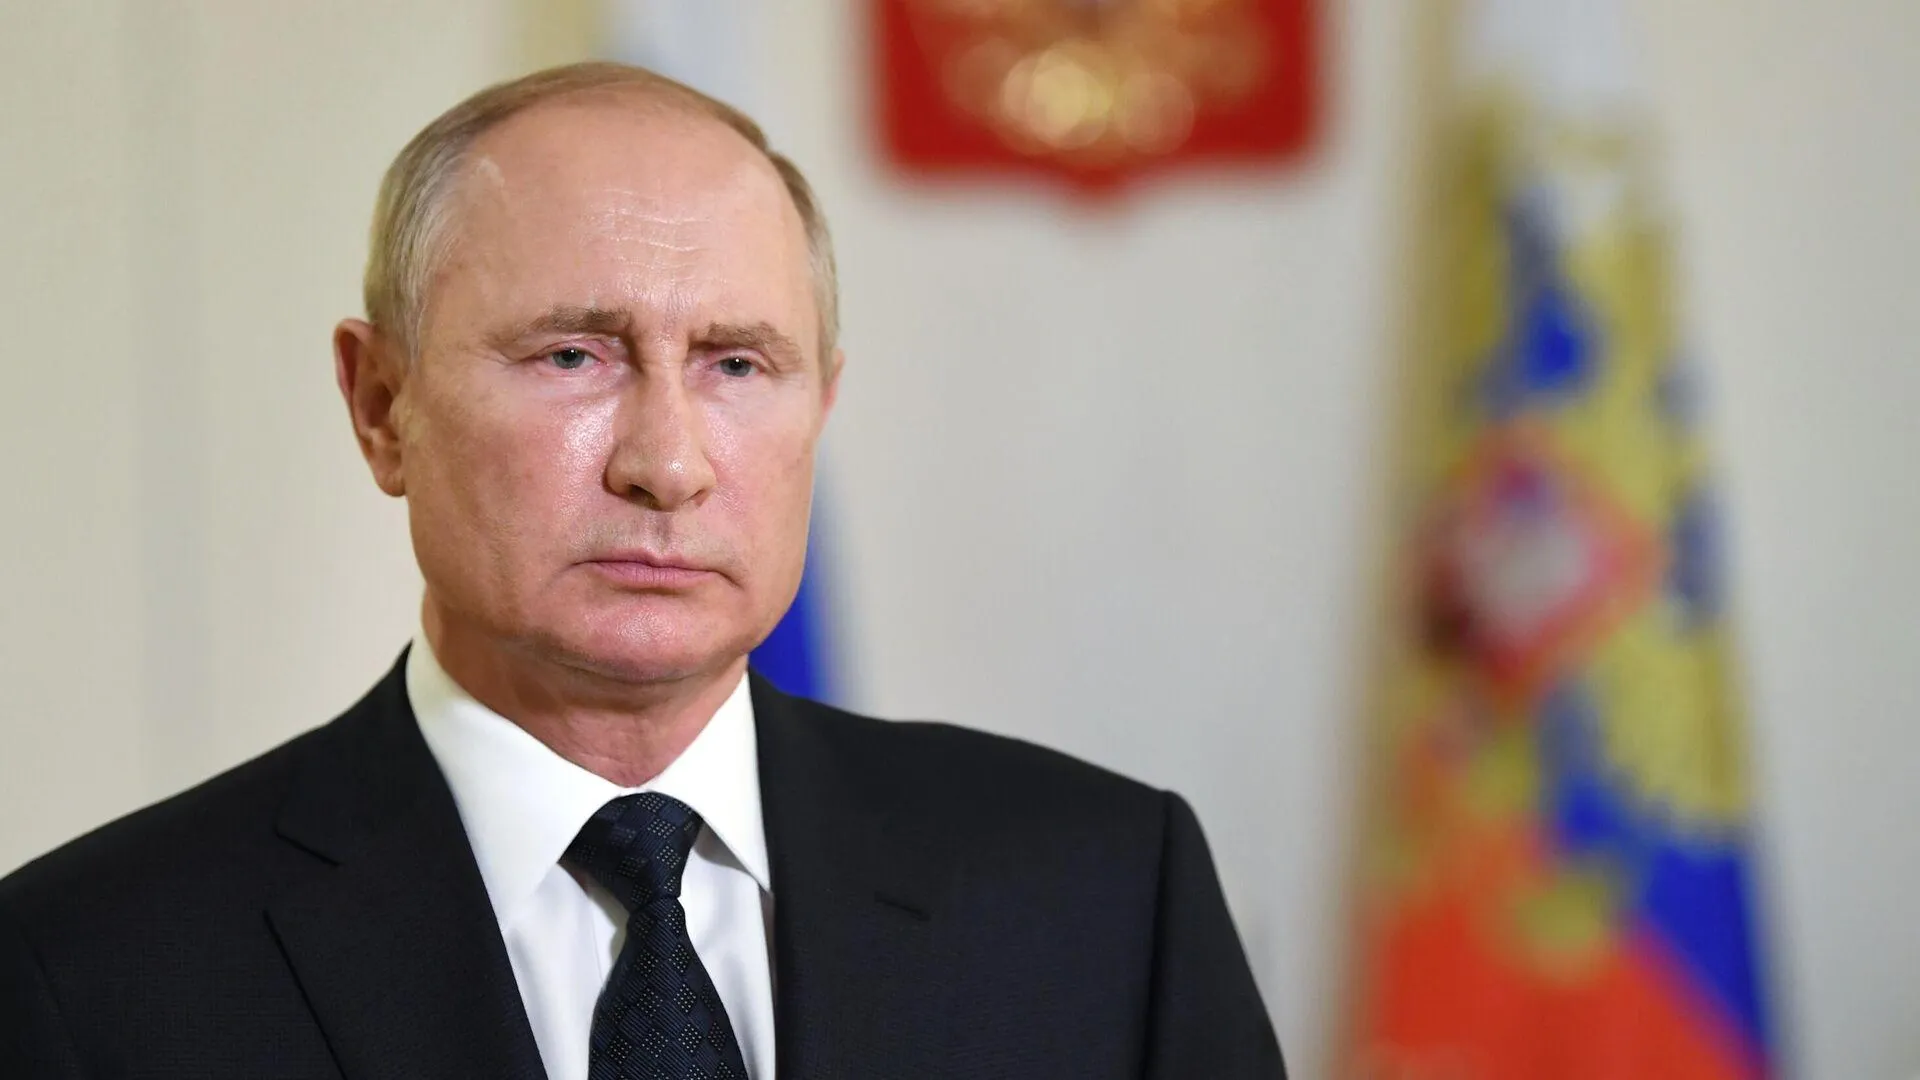 Партнерство государства и бизнеса позволяет справляться с трудностями — Путин